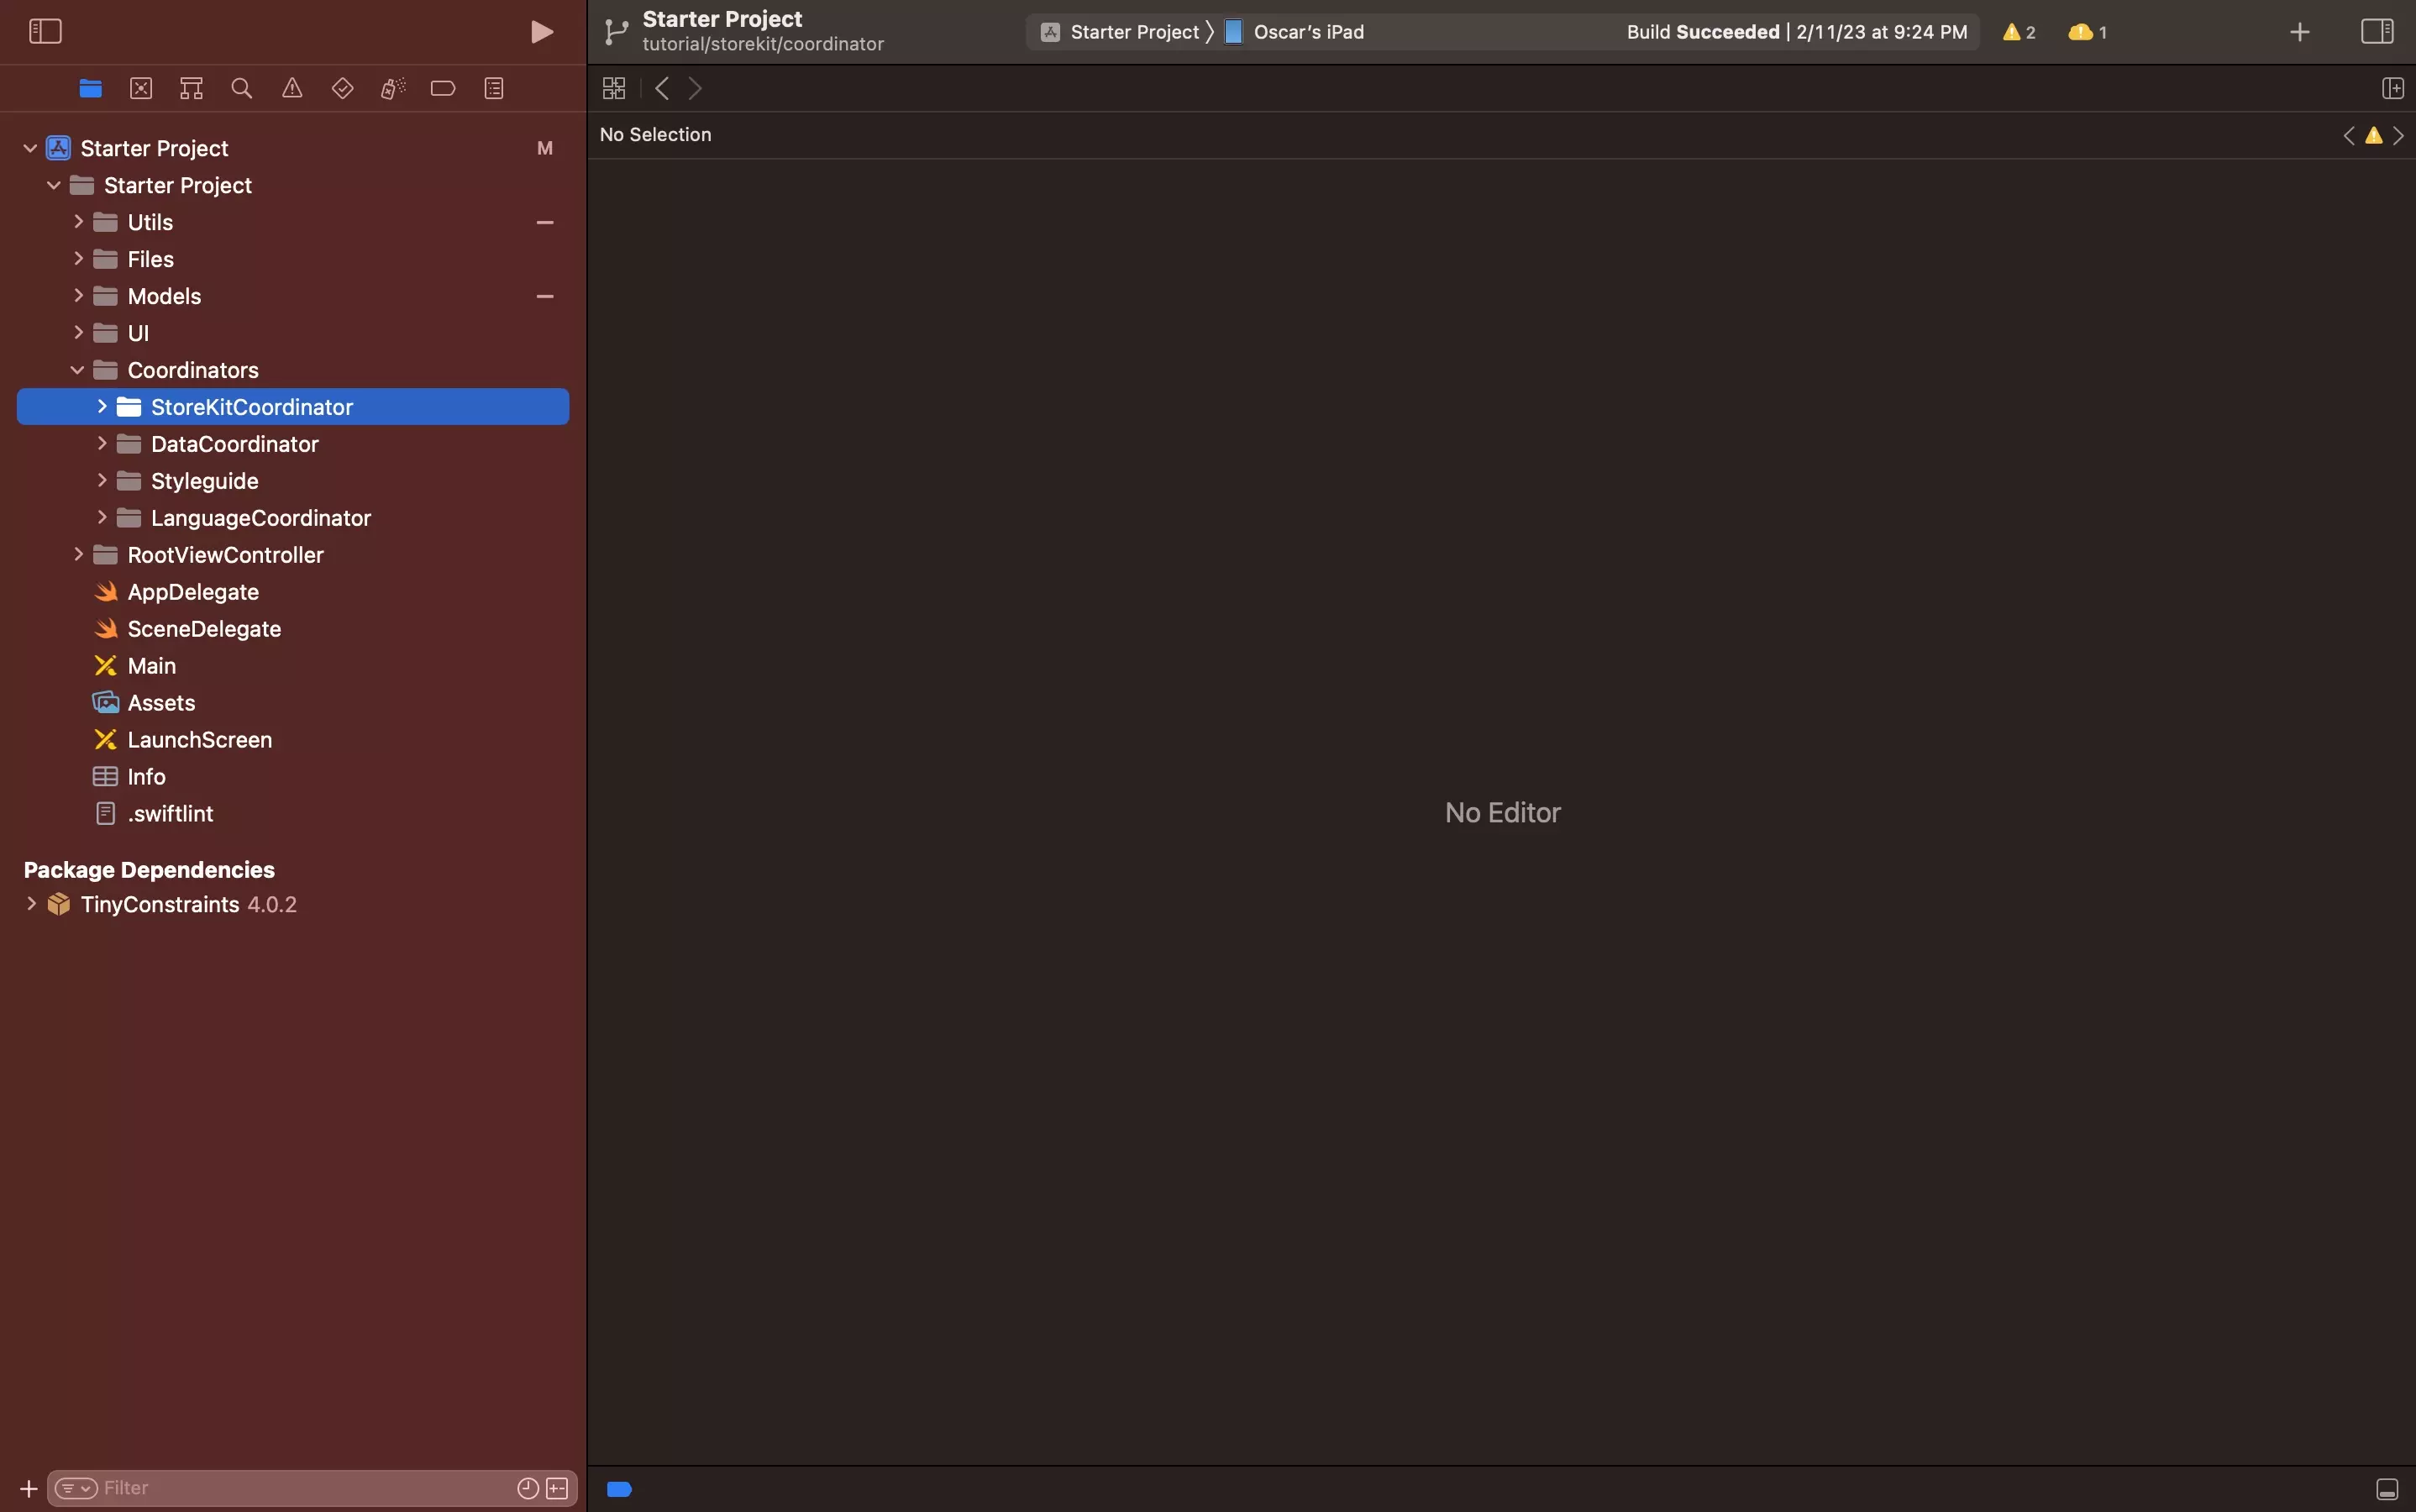 A screenshot of Xcode showing the StoreKitCoordinator folder under Coordinators.